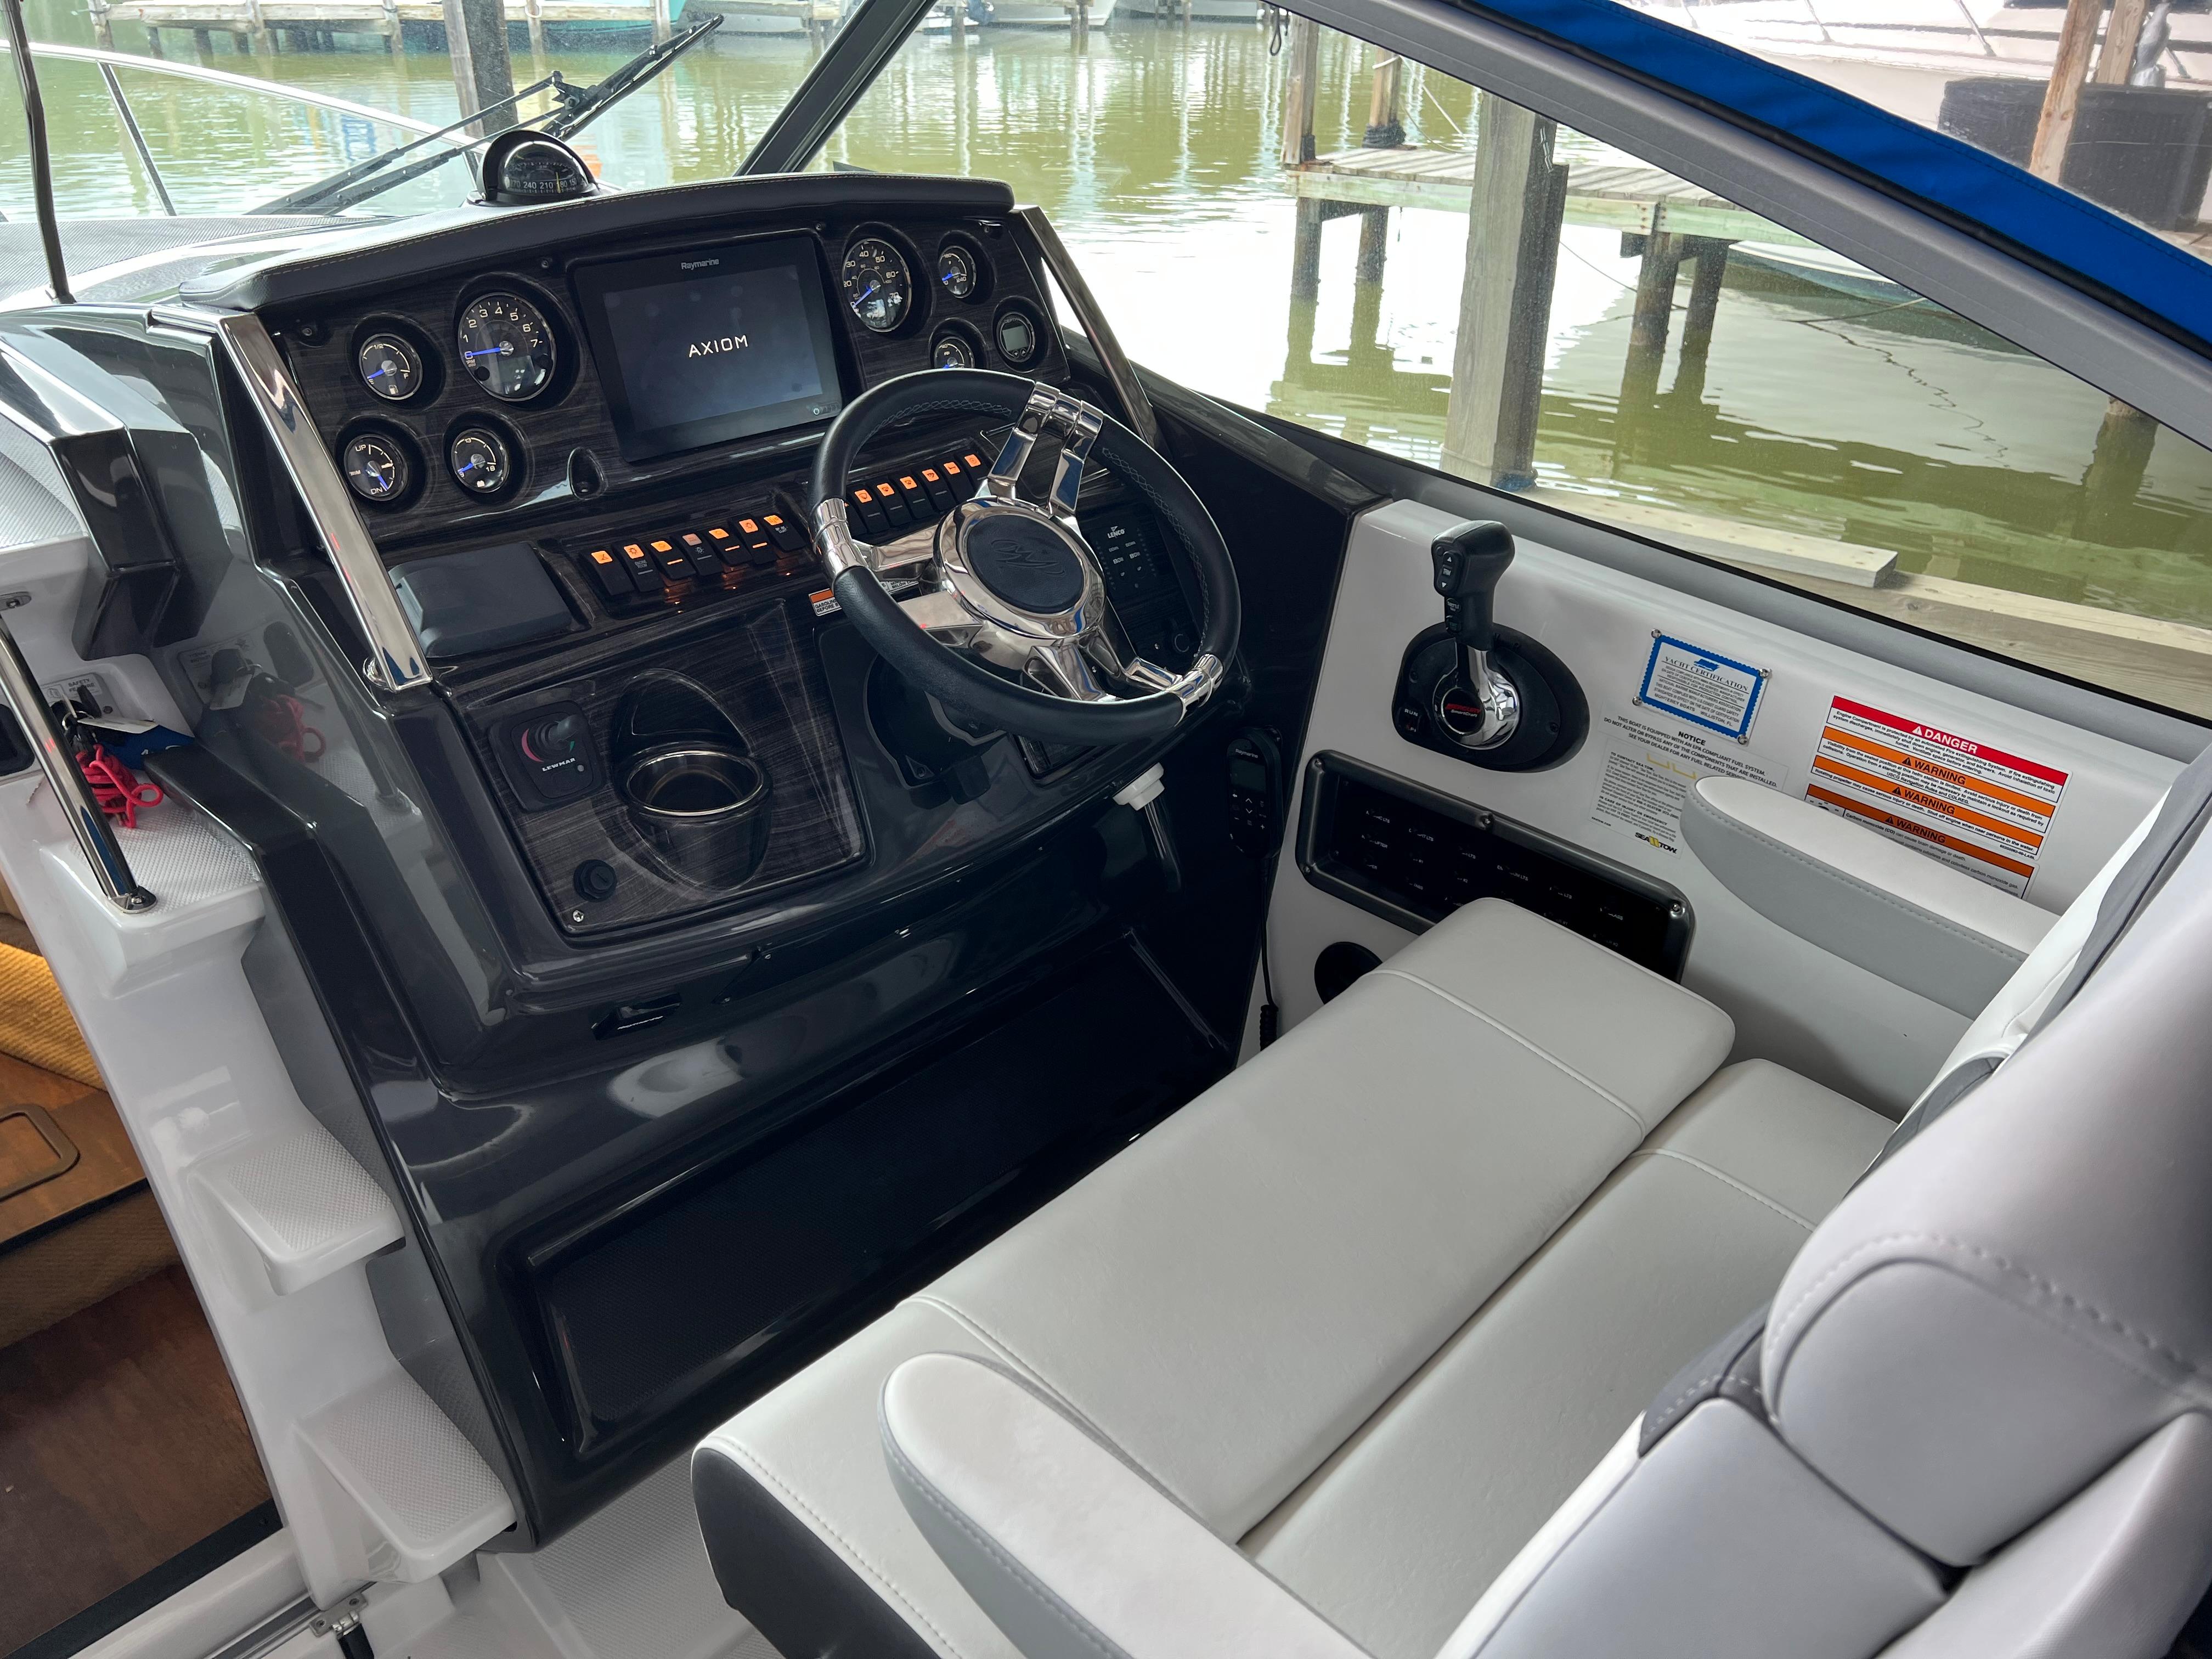 2020 Monterey 295 Sport Yacht For Sale | YaZu Yachting | Deltaville